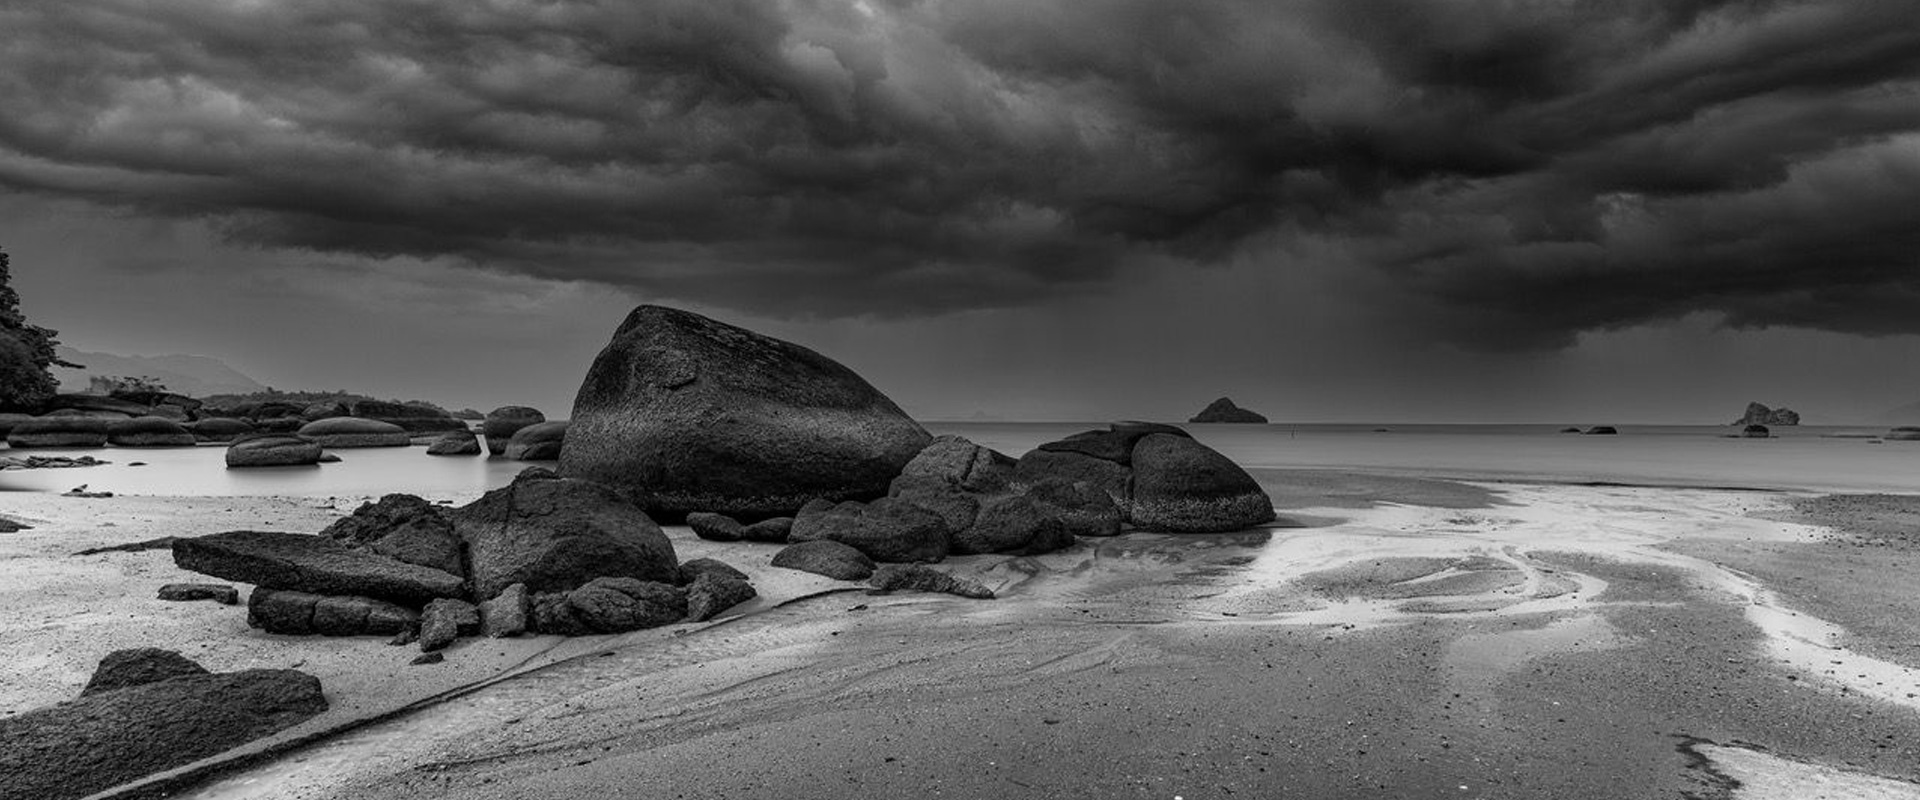 Pantai Pasir Hitam (Black Sand Beach), Langkawi © SC Shekar